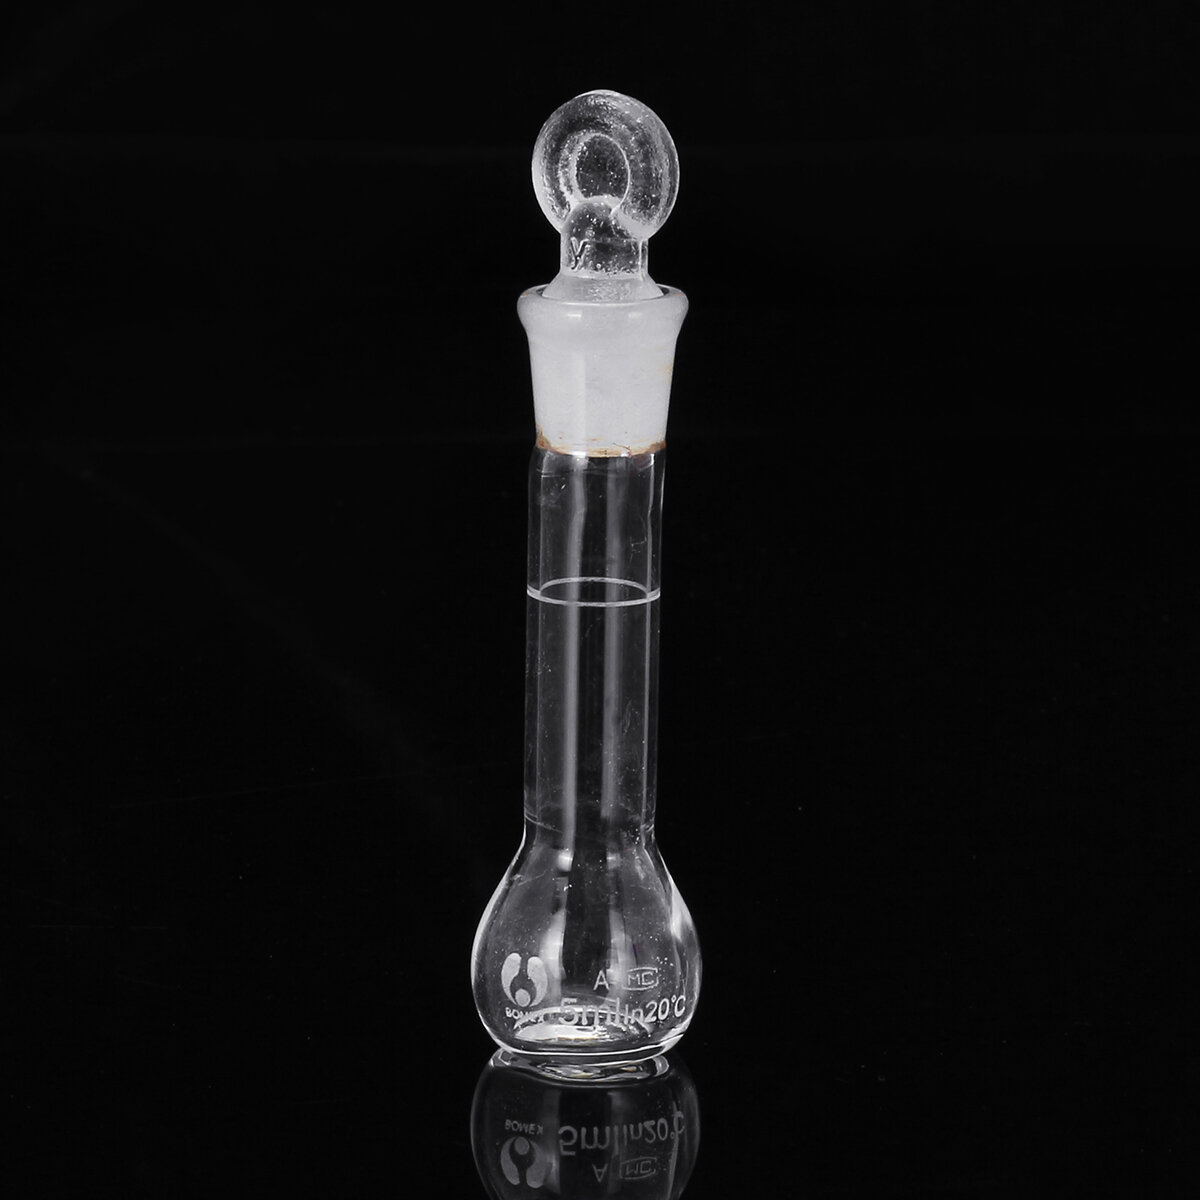 5mL Clear Glass Volumetric Flask w/ Glass Stopper Lab Chemistry Glassware